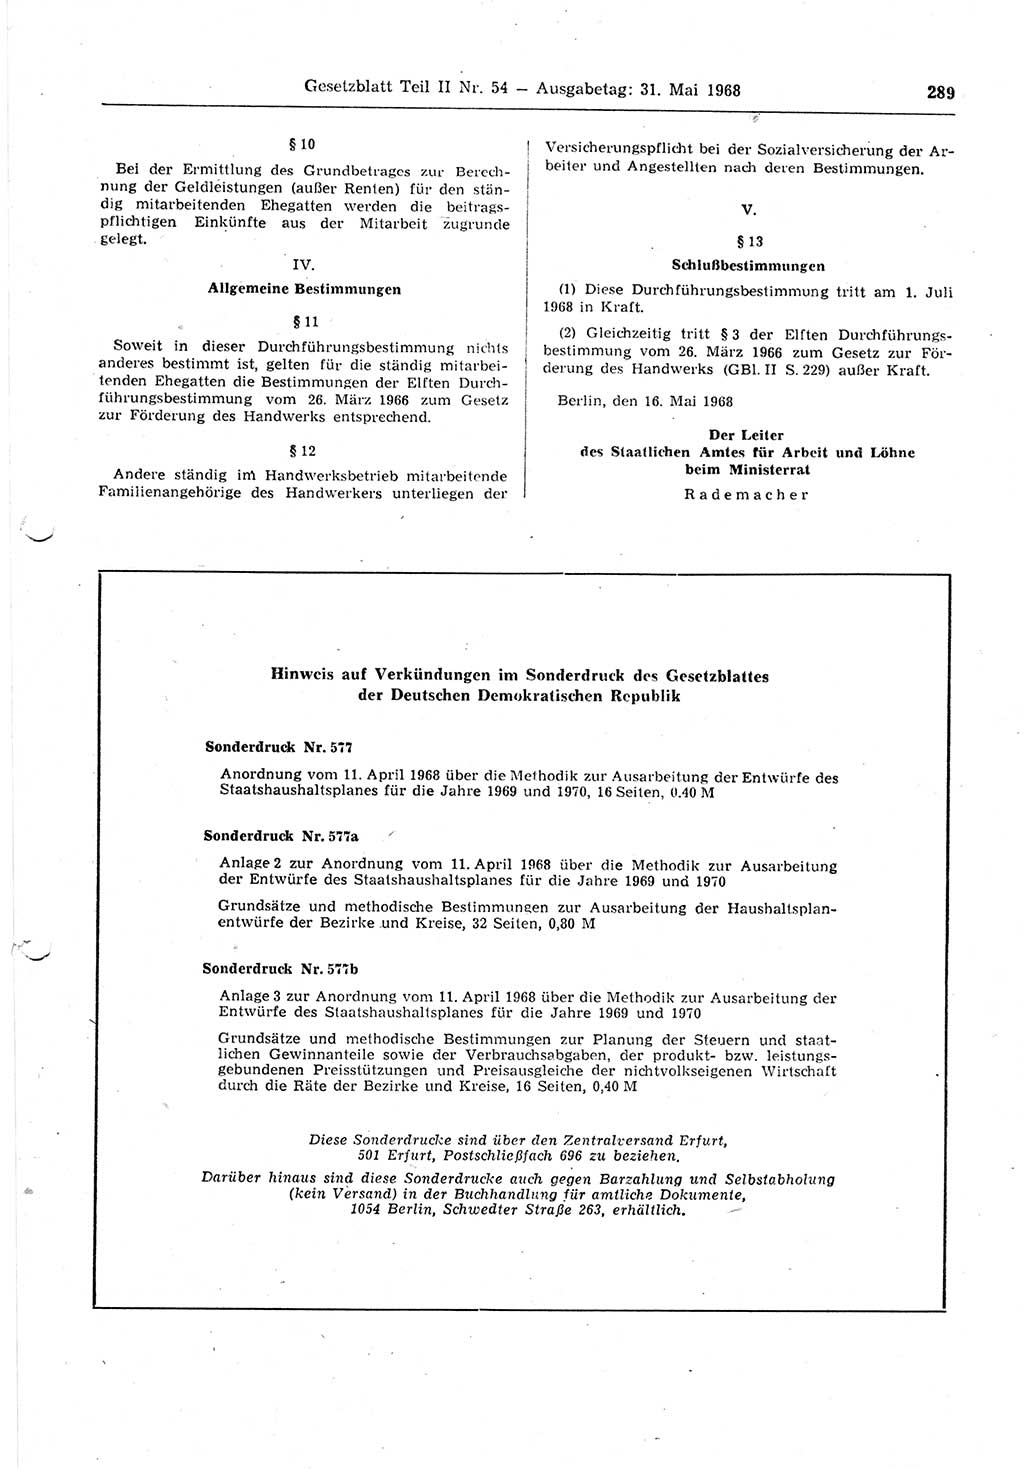 Gesetzblatt (GBl.) der Deutschen Demokratischen Republik (DDR) Teil ⅠⅠ 1968, Seite 289 (GBl. DDR ⅠⅠ 1968, S. 289)